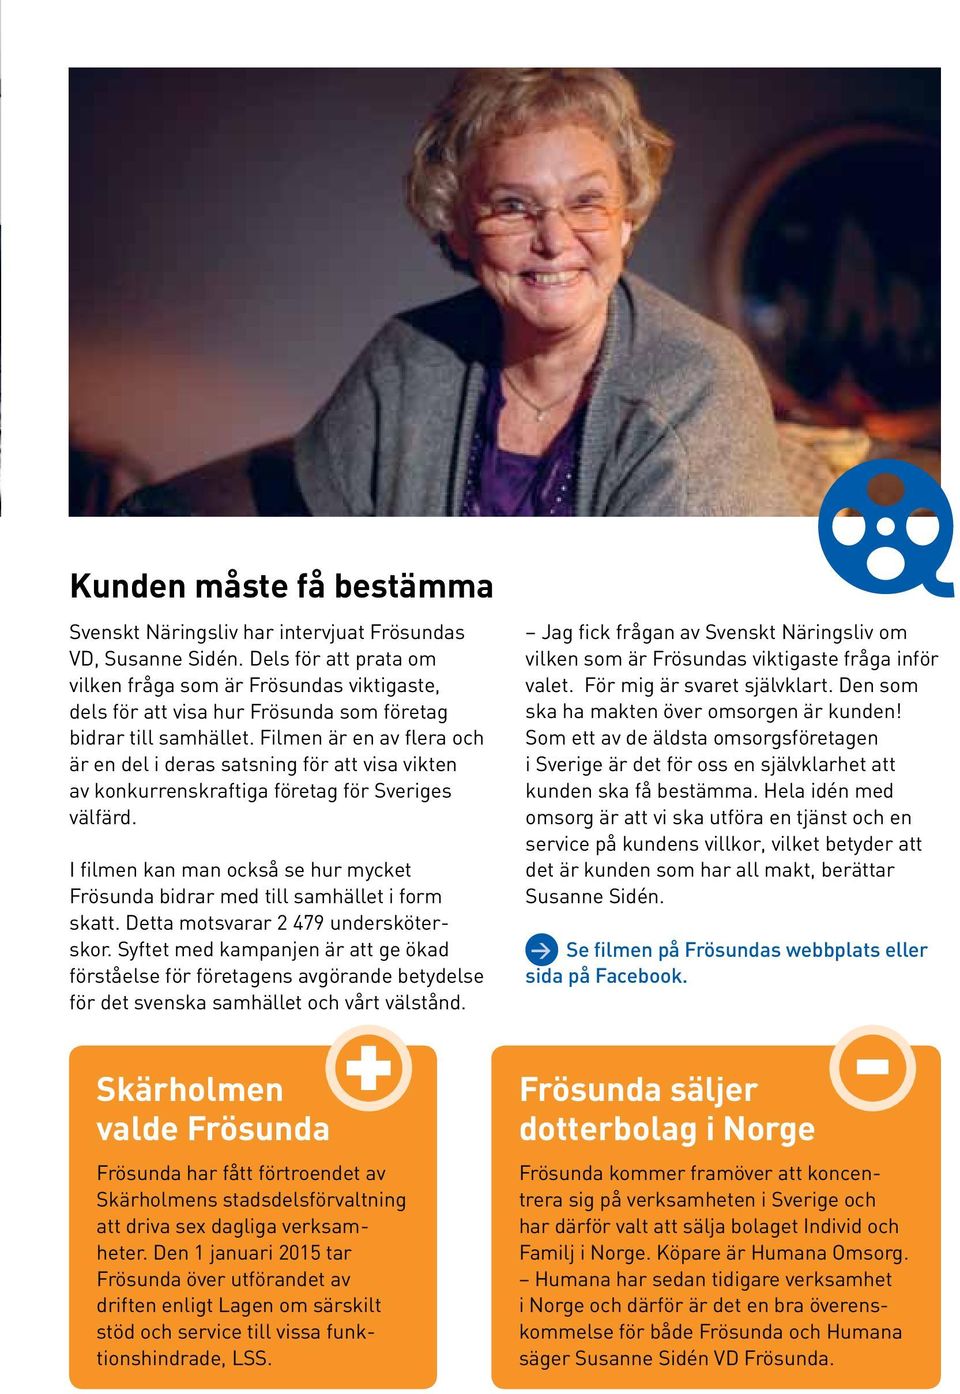 Filmen är en av flera och är en del i deras satsning för att visa vikten av konkurrenskraftiga företag för Sveriges välfärd.